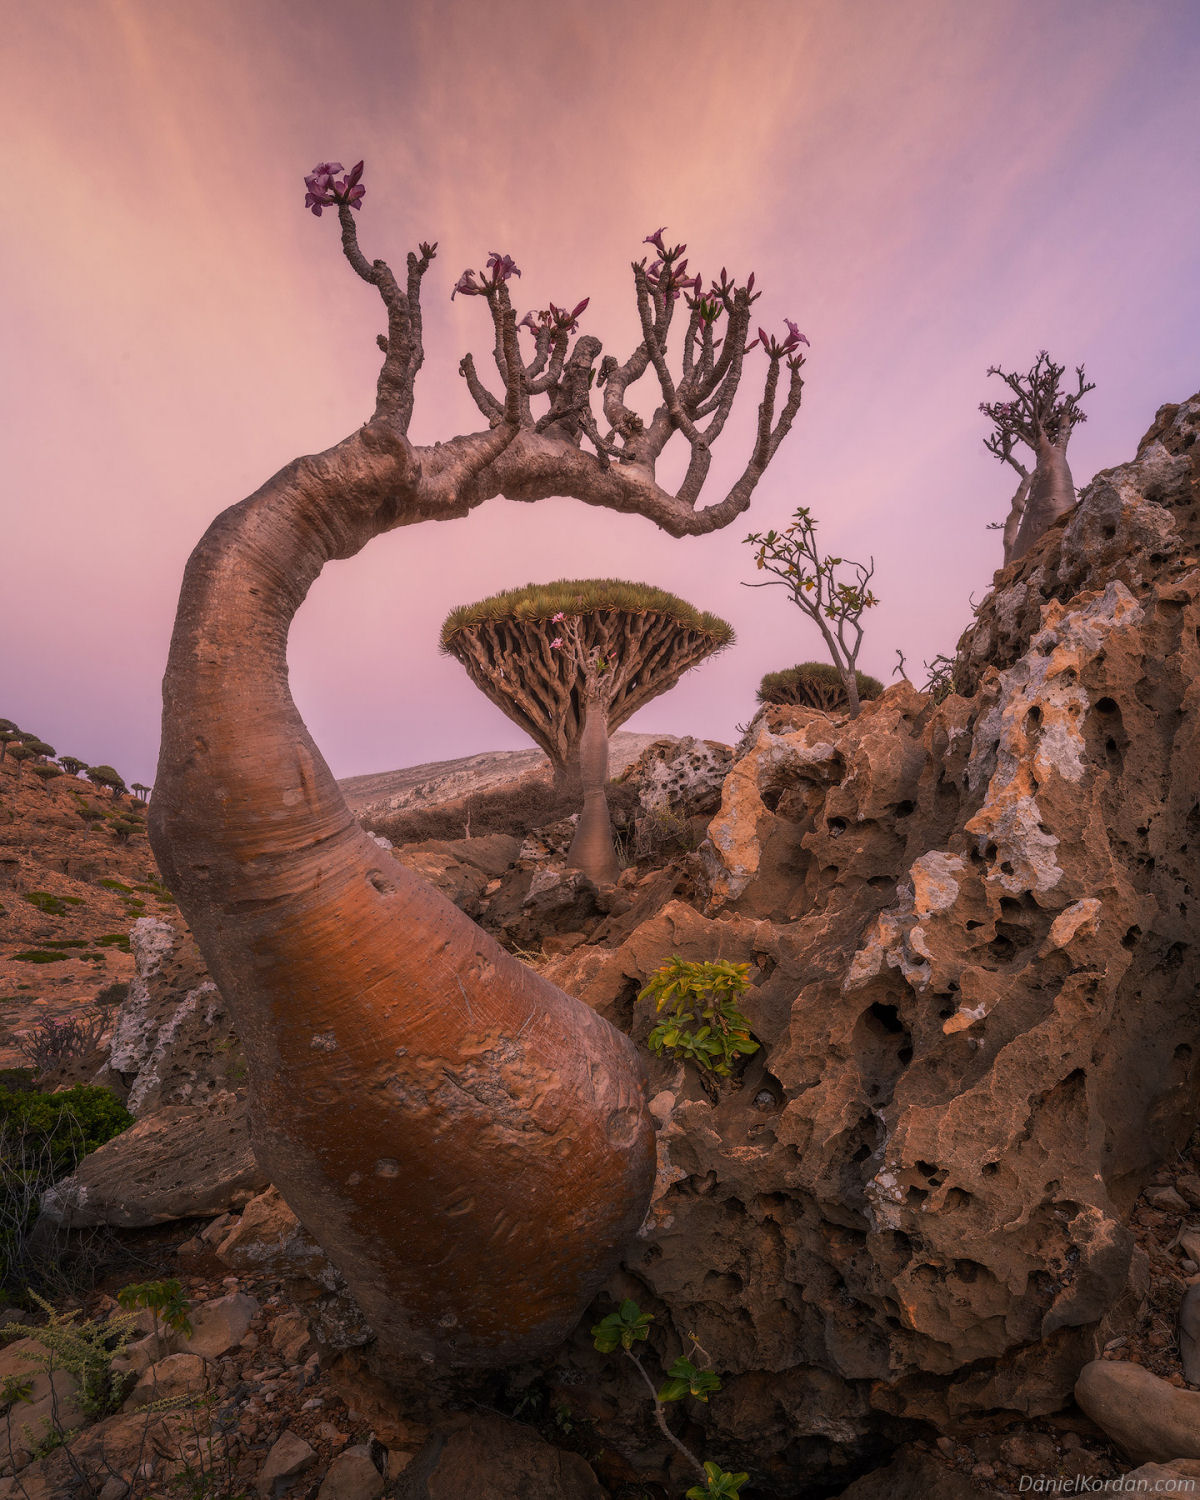 Fotosérie incrível registra os ramos retorcidos dos dragoeiros de Socotra 06